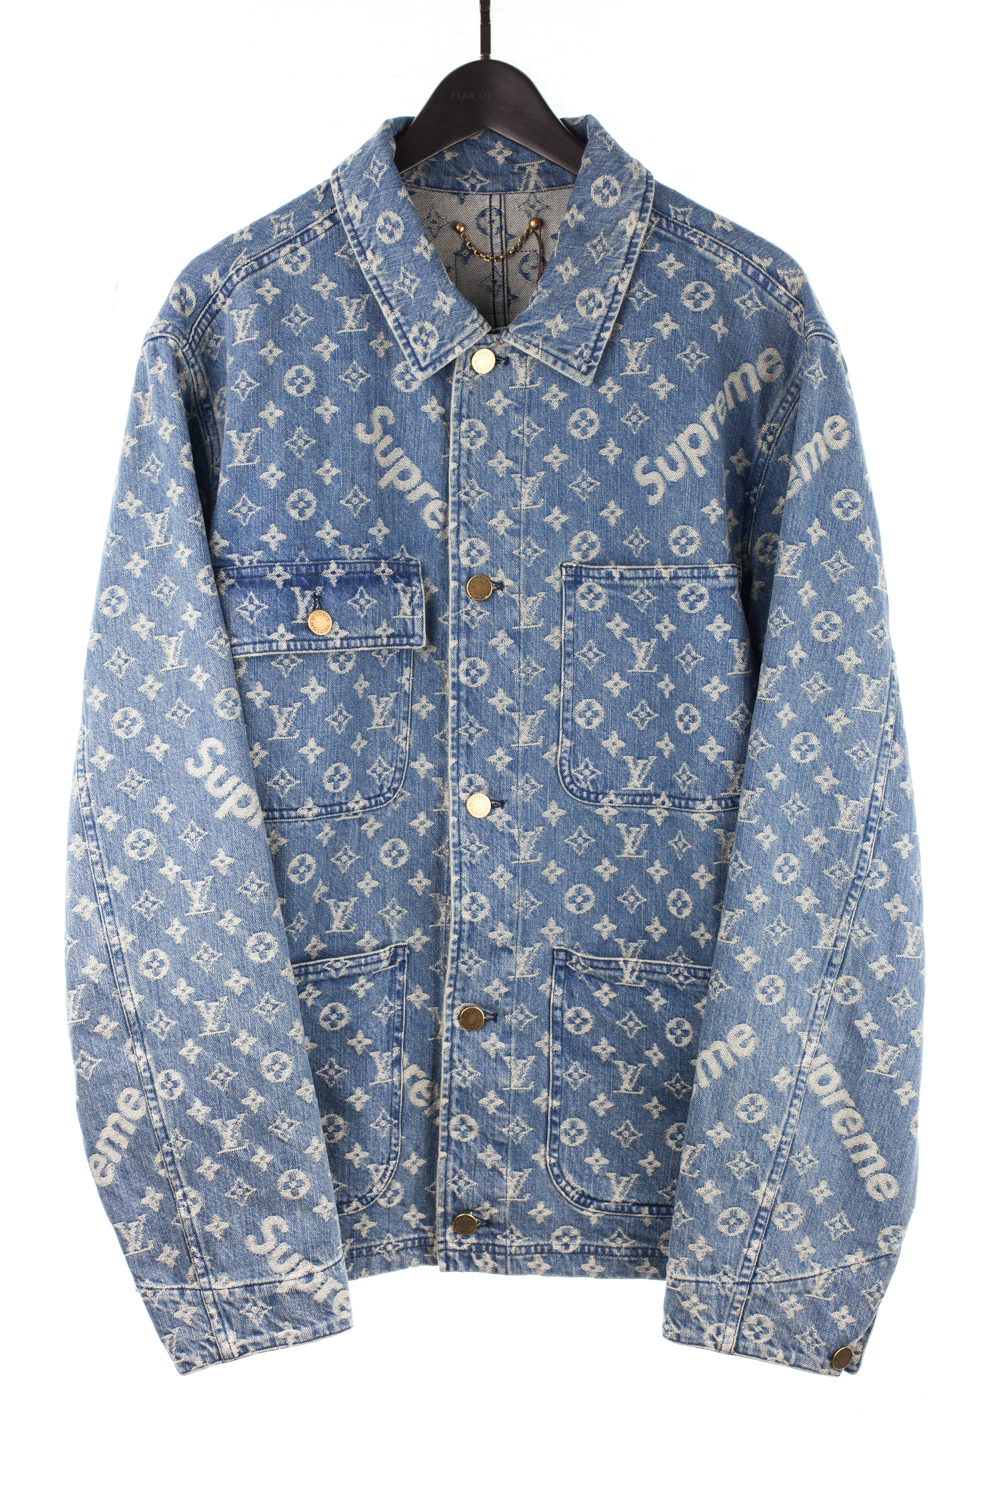 Louis Vuitton, Jackets & Coats, Supreme X Louis Vuitton Jacquard Denim  Trucker Jacket